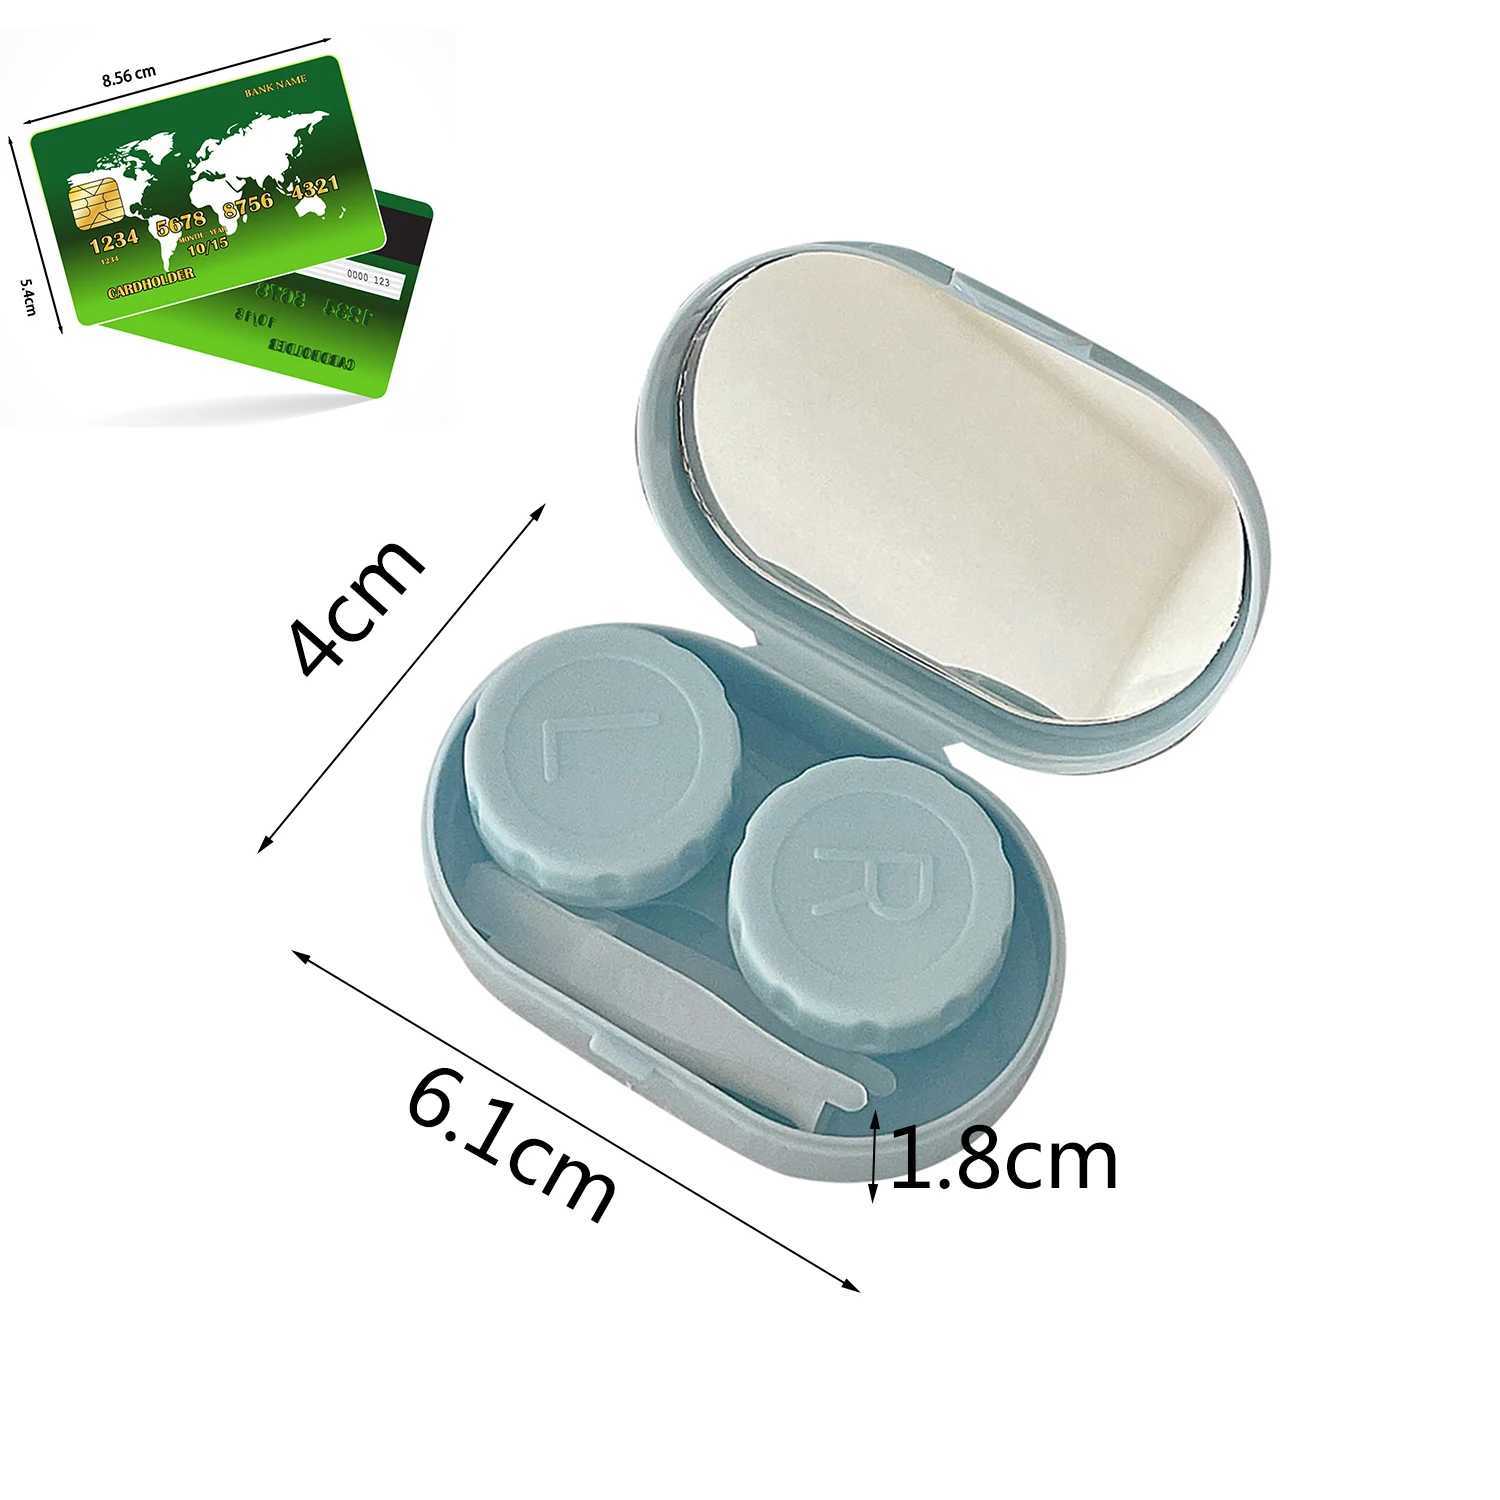 Конечные аксессуары для контактной линзы гладкий цвет конфеты портативная мини -контактная линза для контейнера для хранения глаз для путешествий с зеркальными линзами D240426